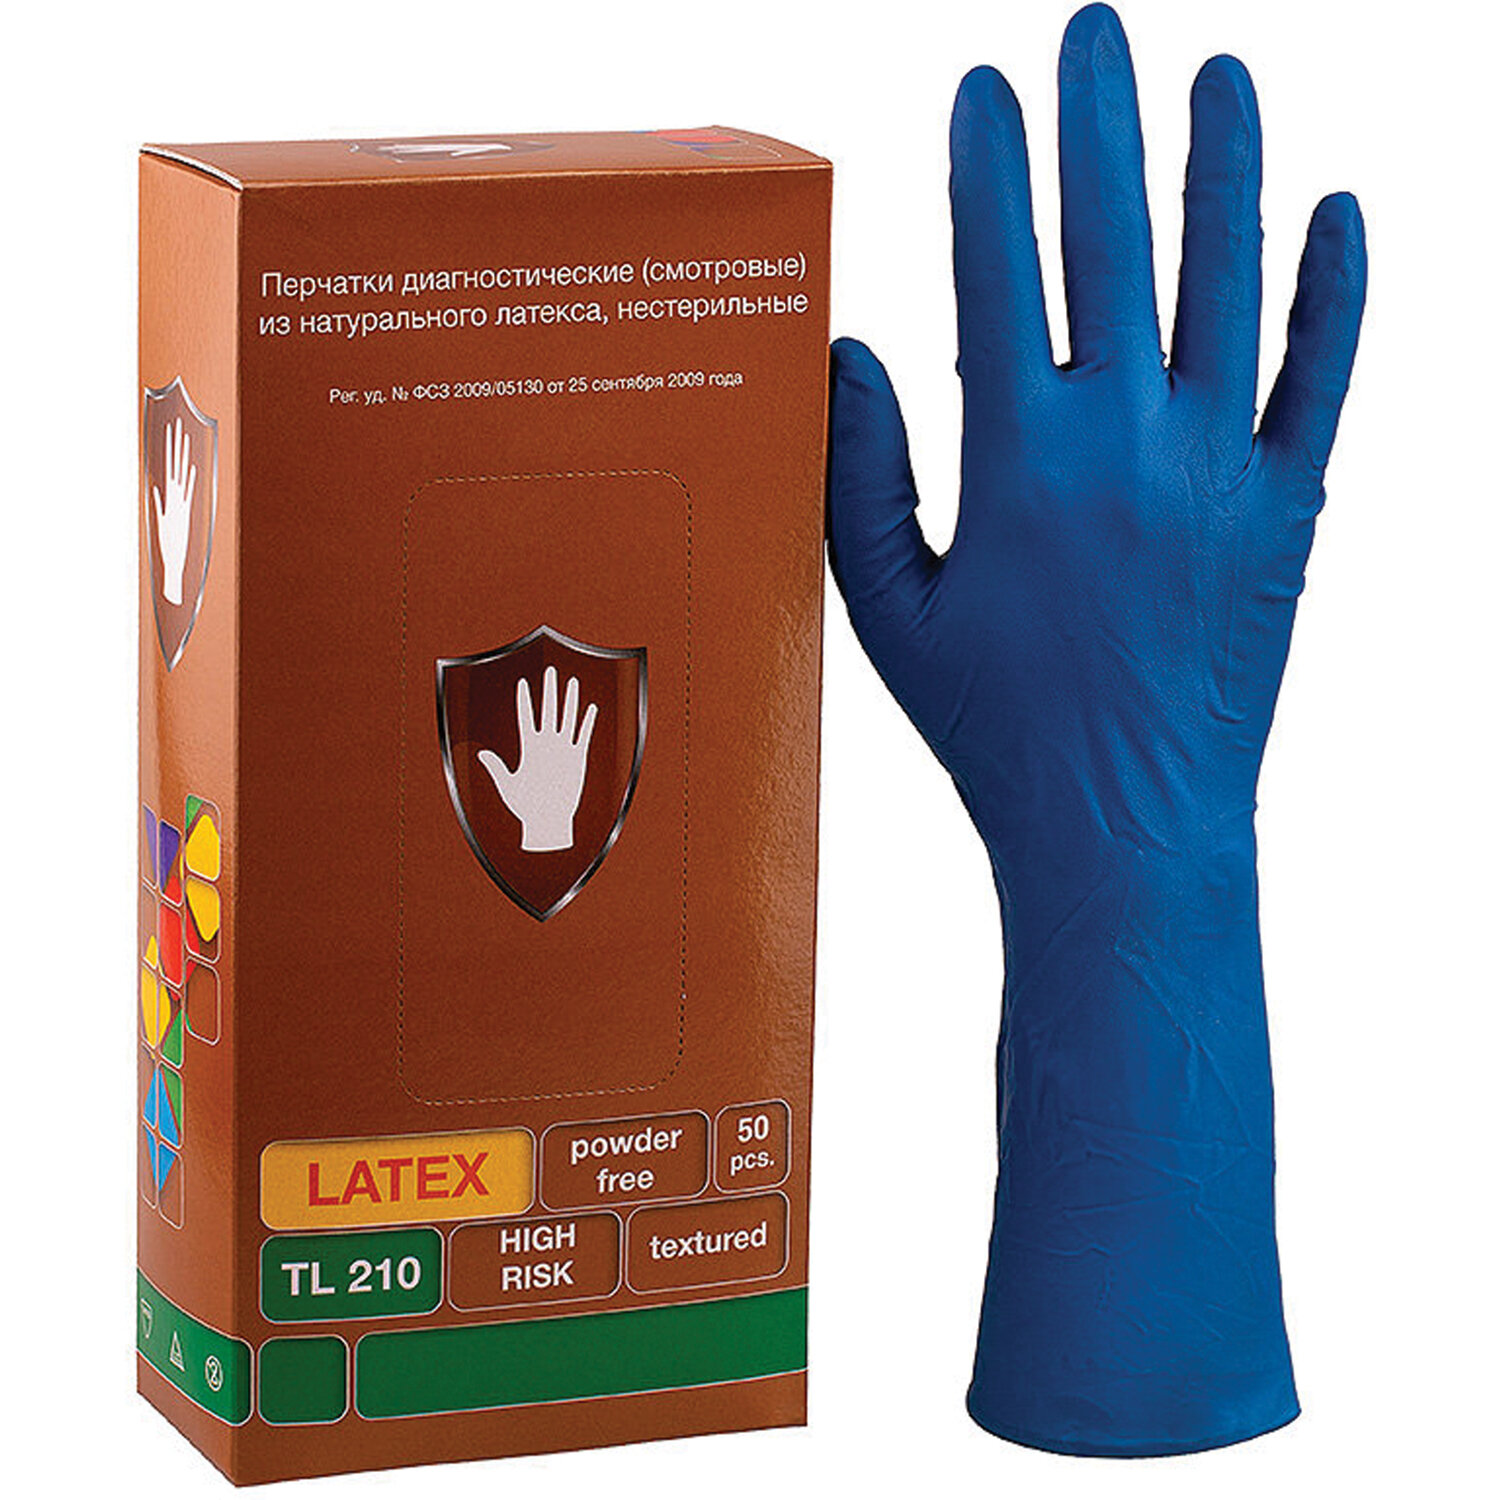 Перчатки латексные, пар в упаковке: 25, L, синий, SAFE&CARE High Risk (DL/TL210)